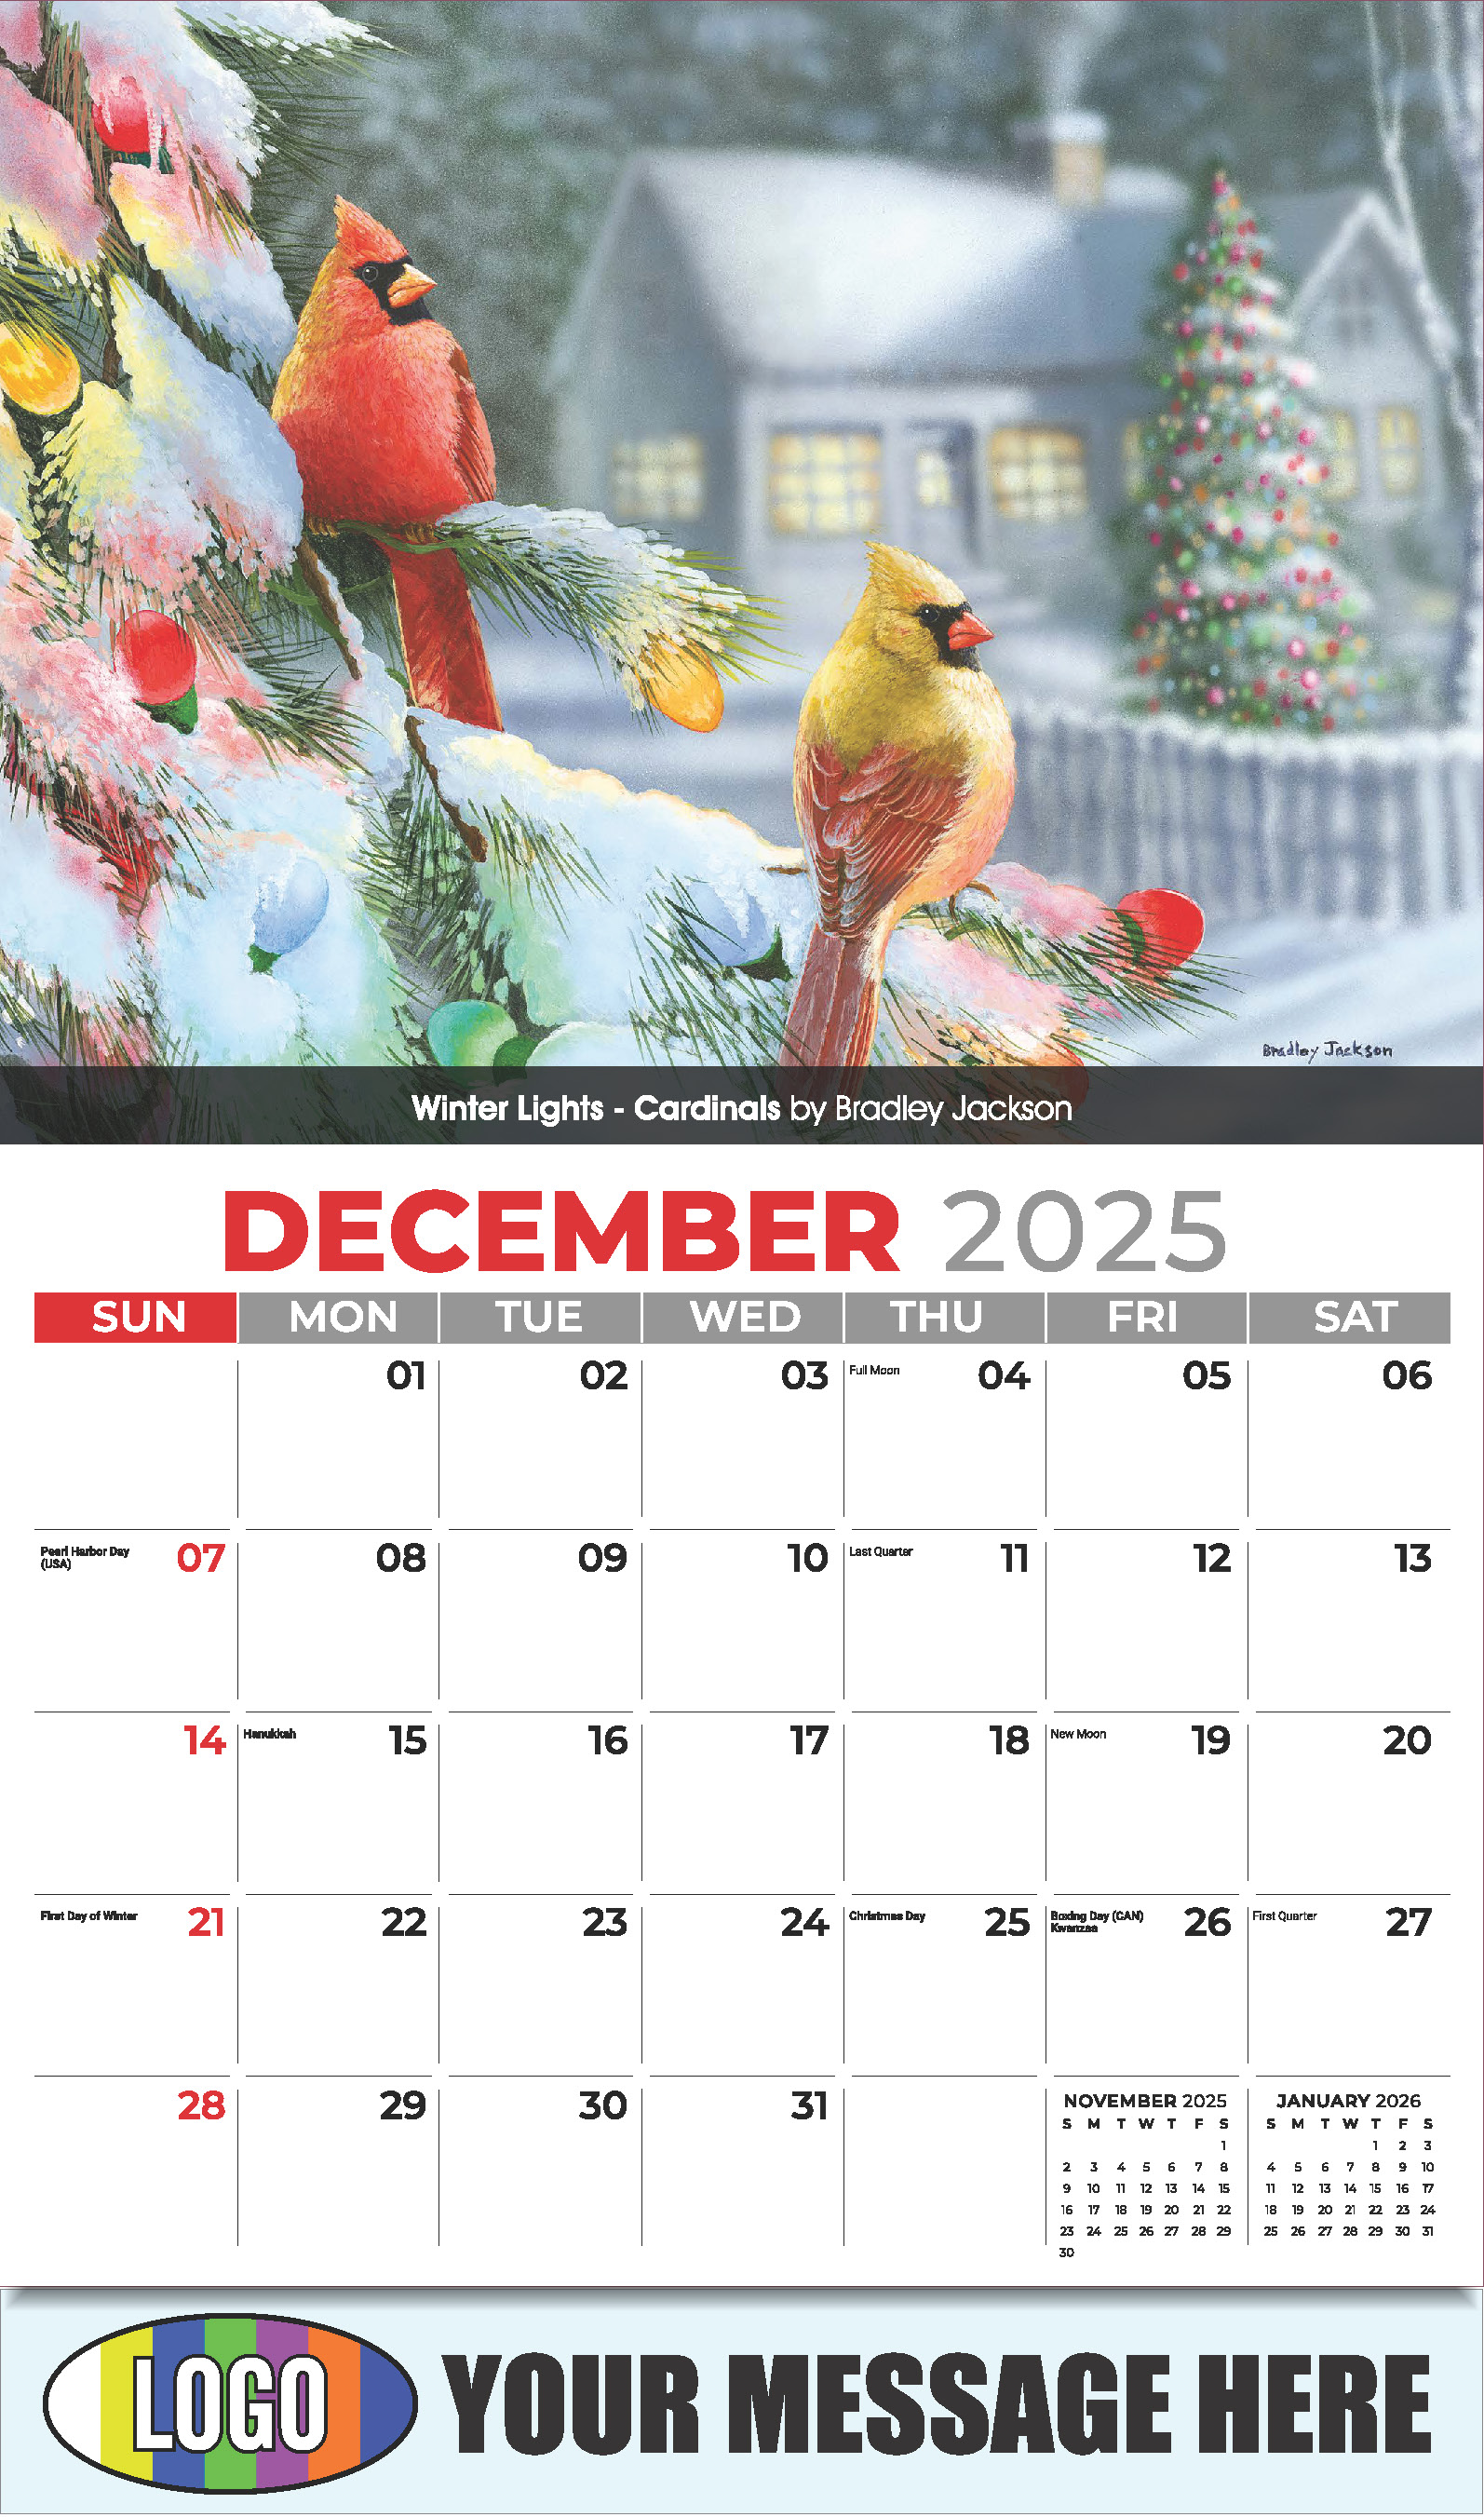 Garden Birds 2025 Business Promotional Calendar - December